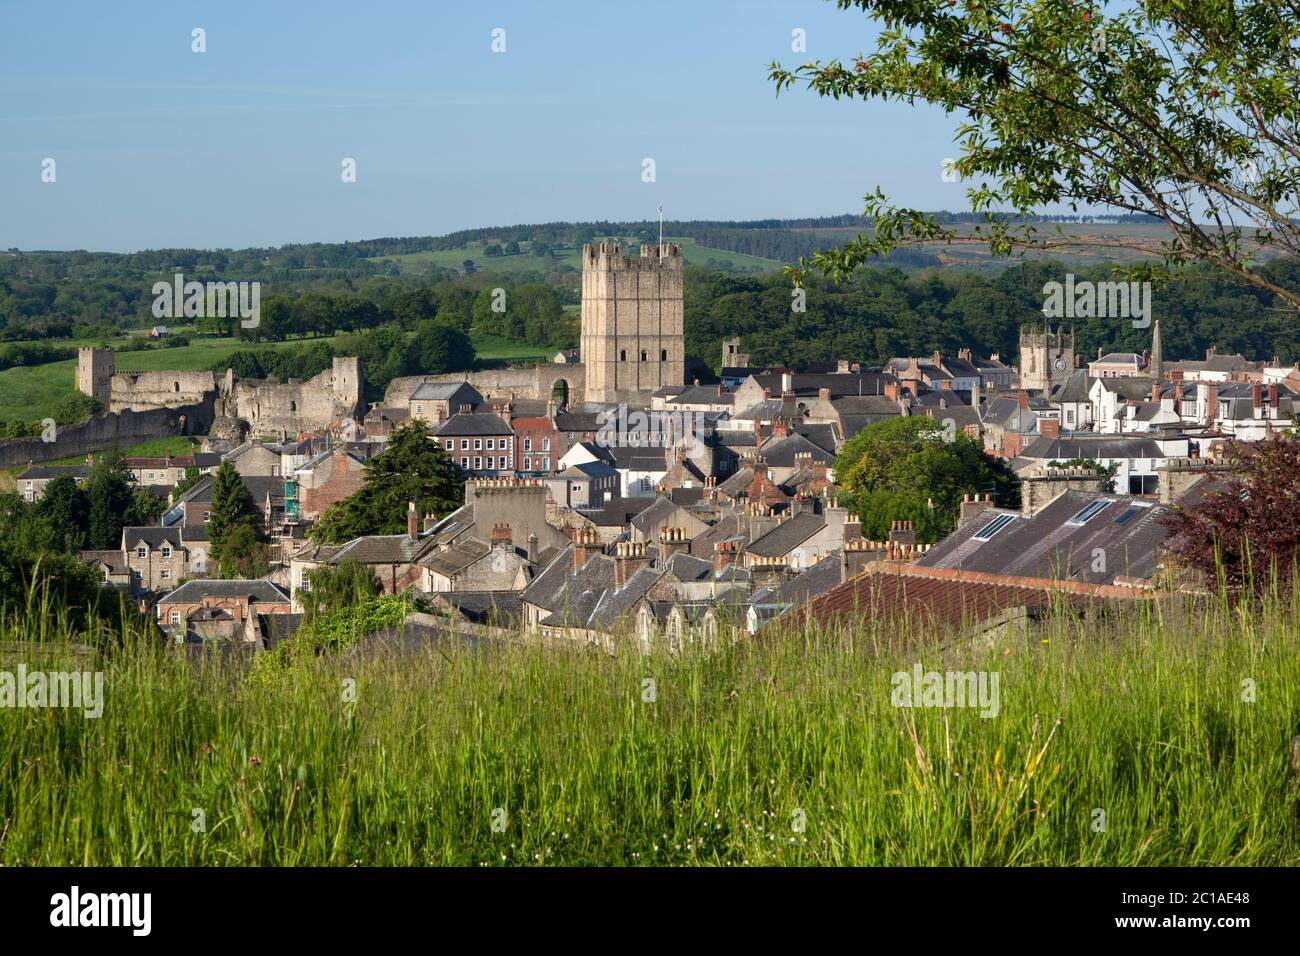 Vue sur la ville et le château de Richmond du XIe siècle, Richmond, North Yorkshire, Angleterre, Royaume-Uni, Europe Banque D'Images